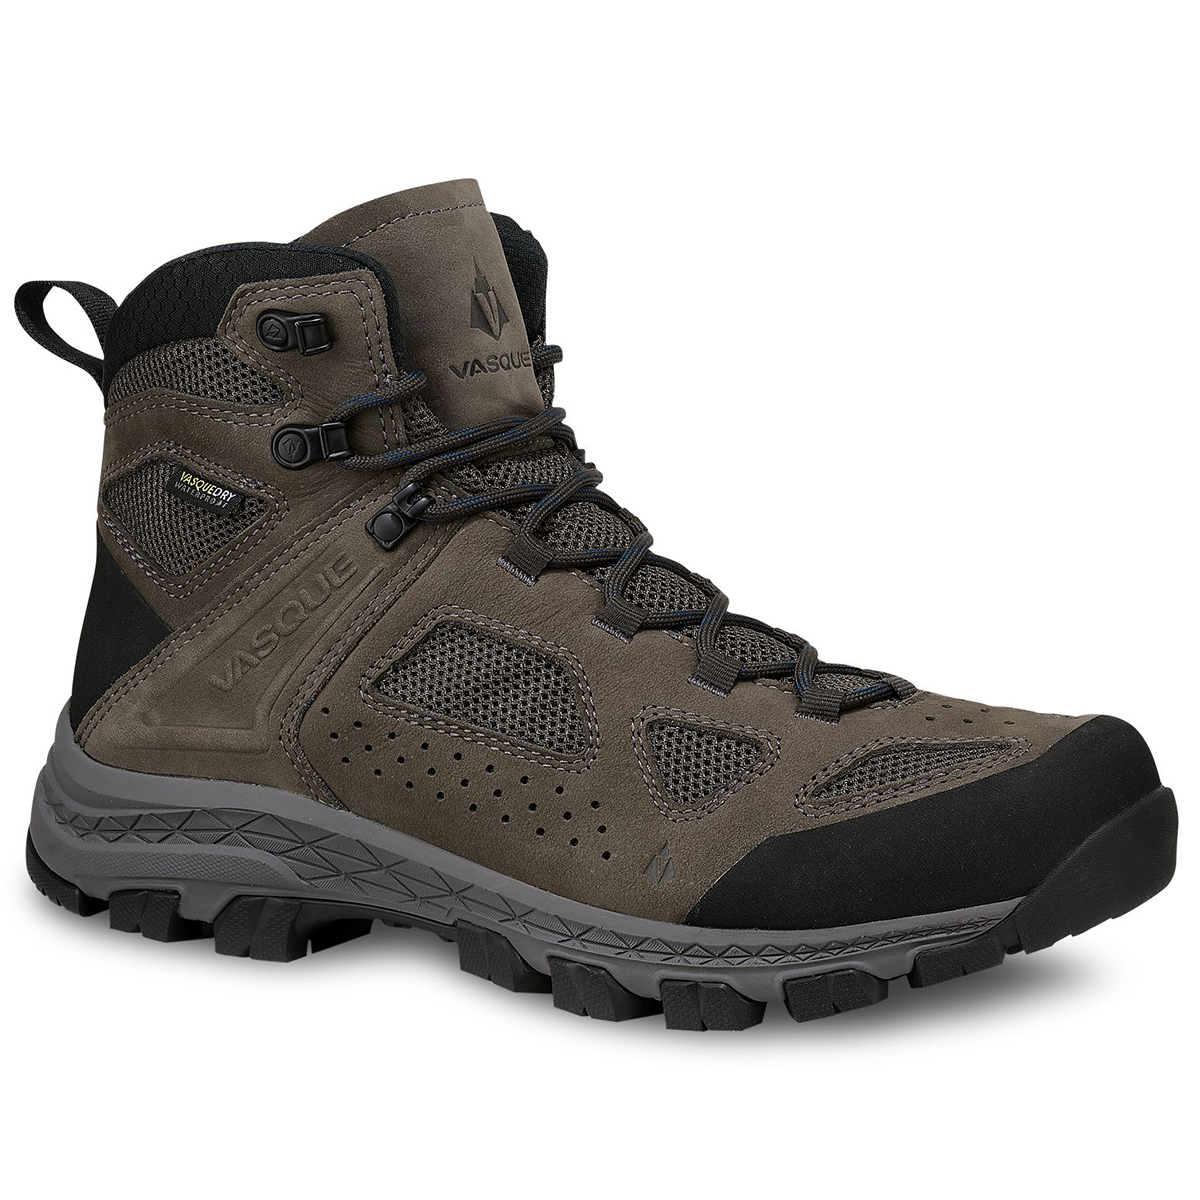 Vasque Men's Breeze Waterproof Hiking Boots, Wide